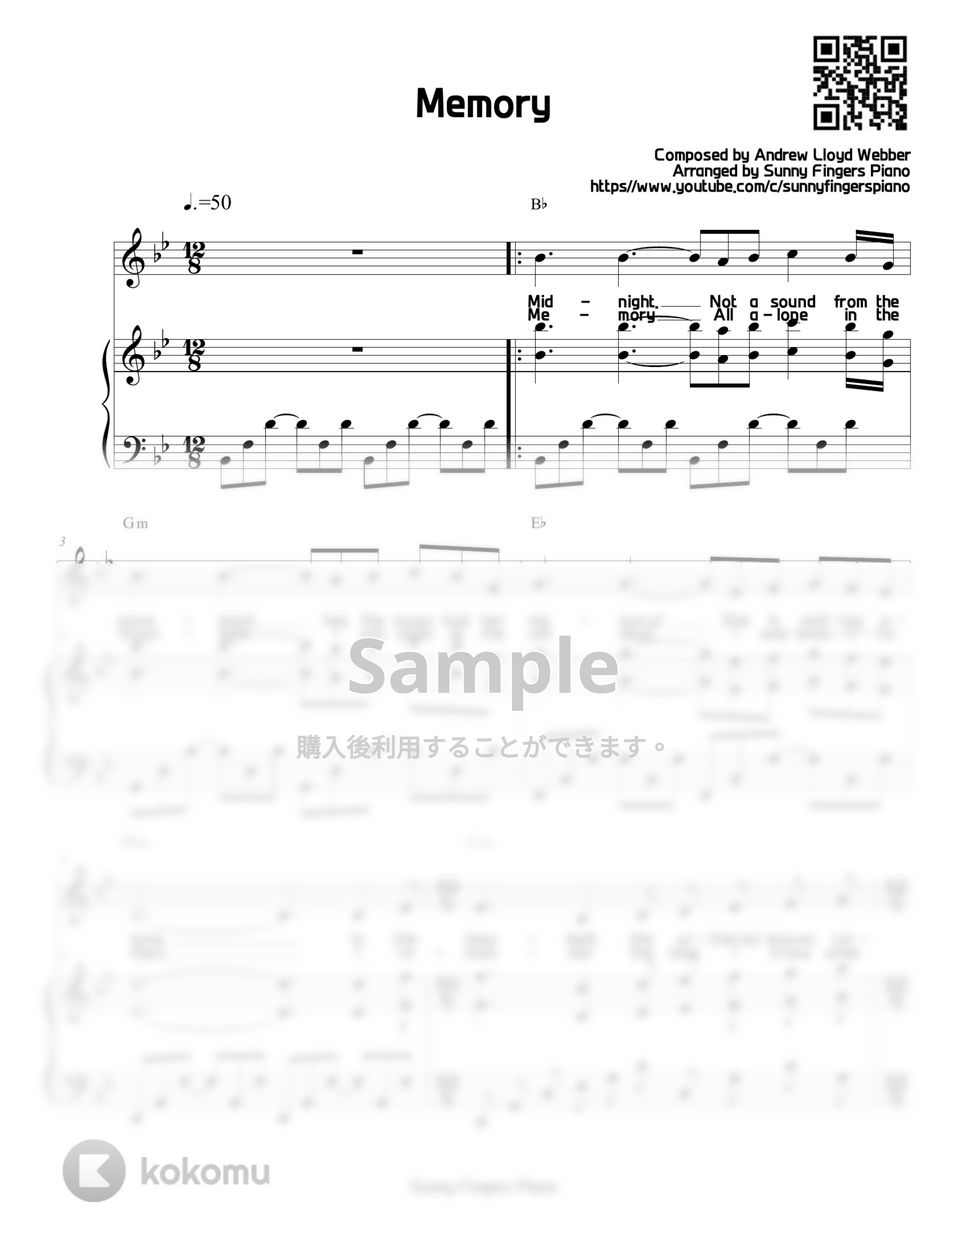 キャッツ - Memory (歌詞付き) by Sunny Fingers Piano